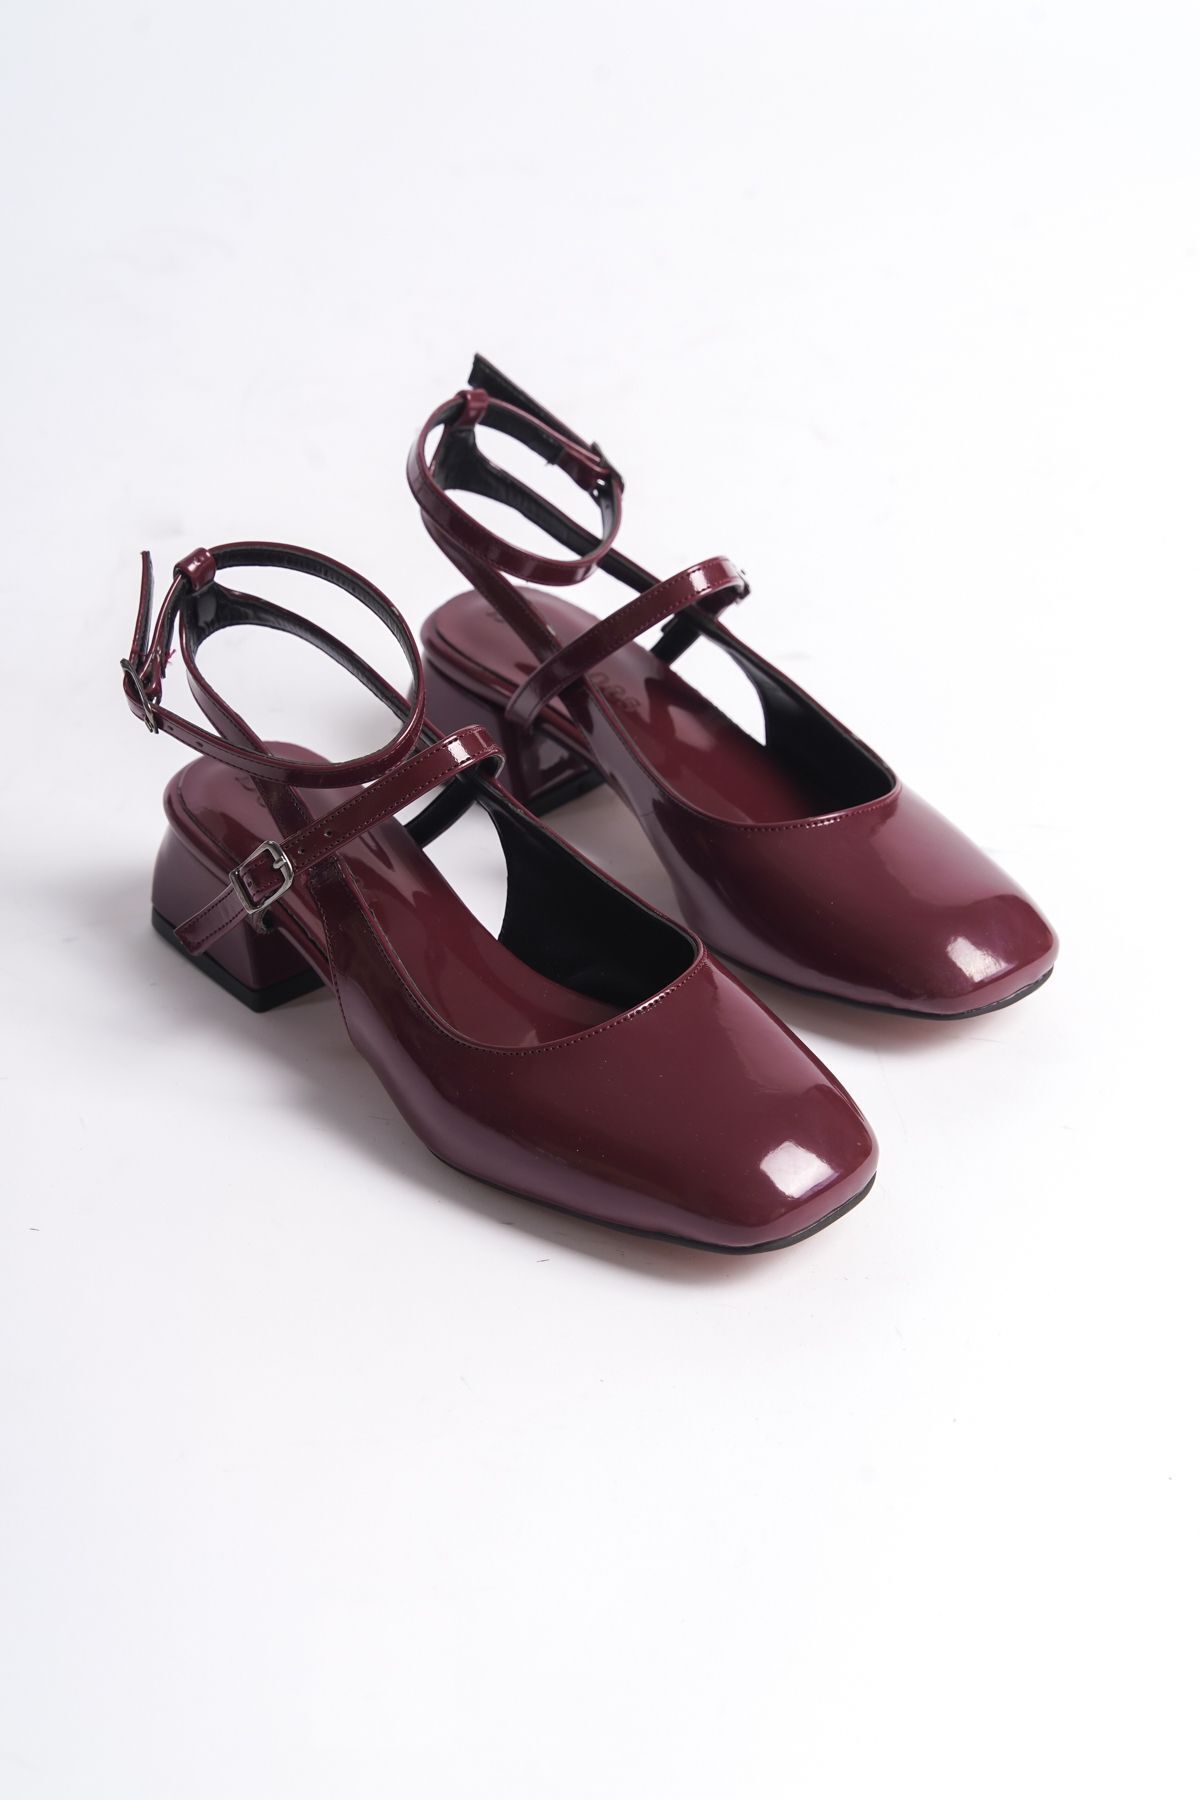 dearshoes Kadın Mary Jane Bordo Rugan Arkası Açık Kare Burunlu Topuklu Ayakkabı